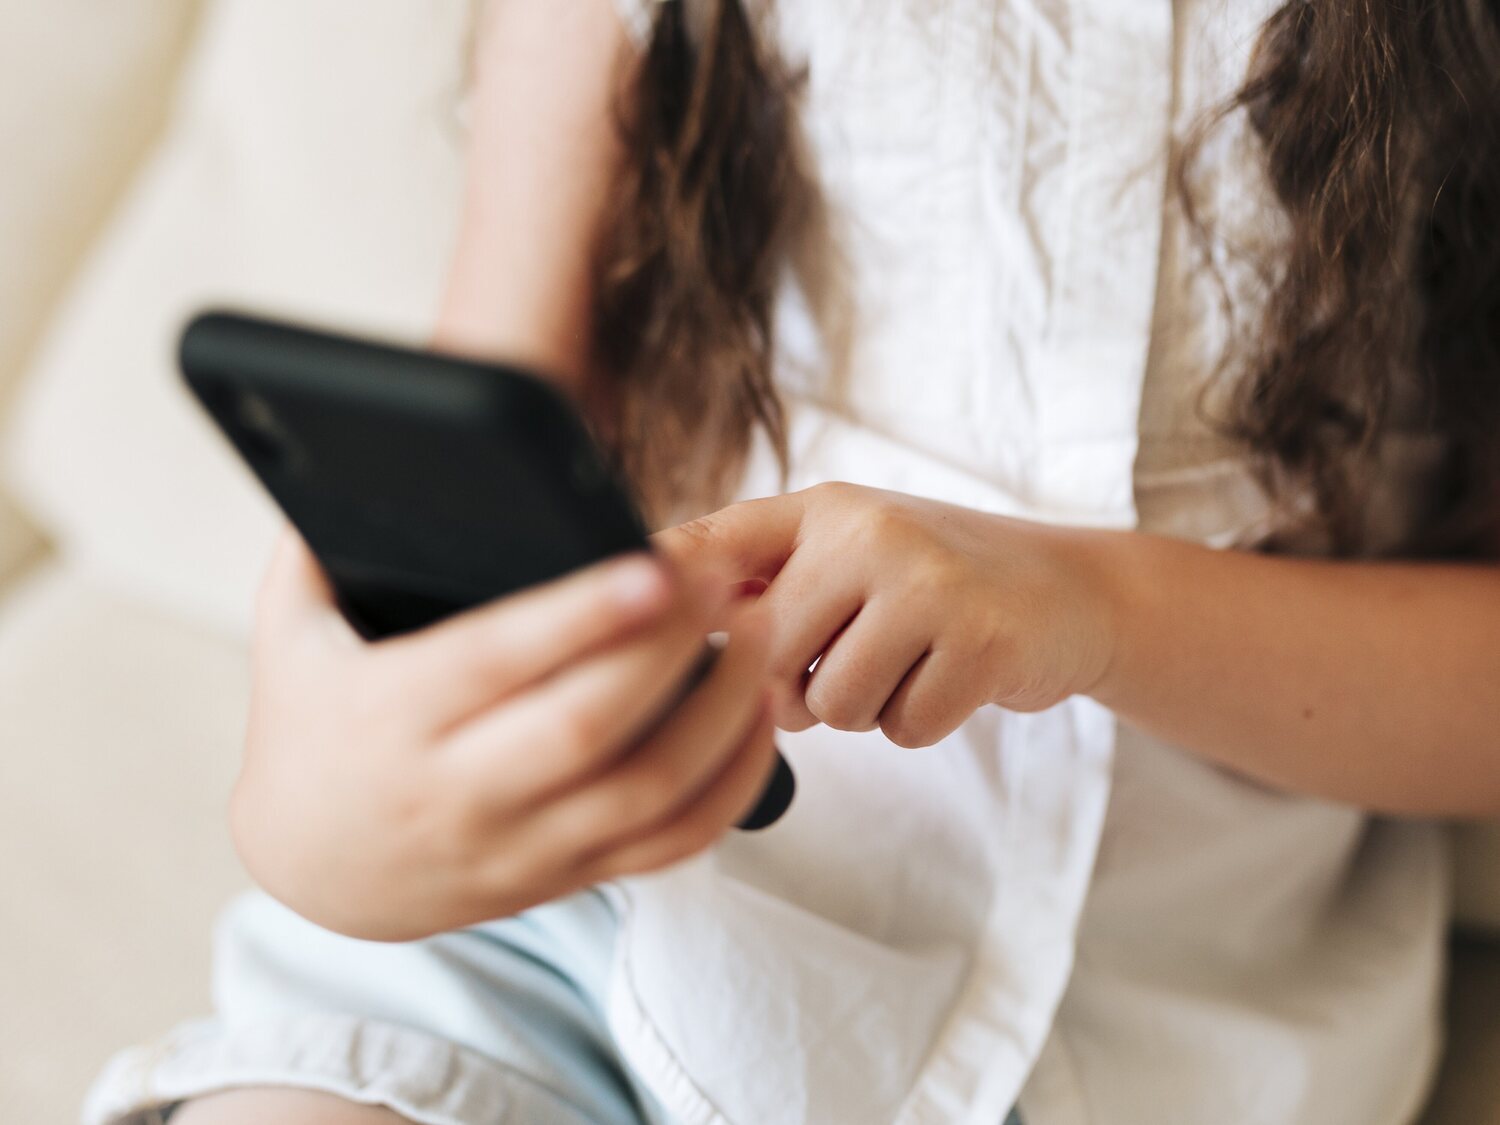 Las niñas en España comienzan a sufrir acoso online entre los 12 y 16 años